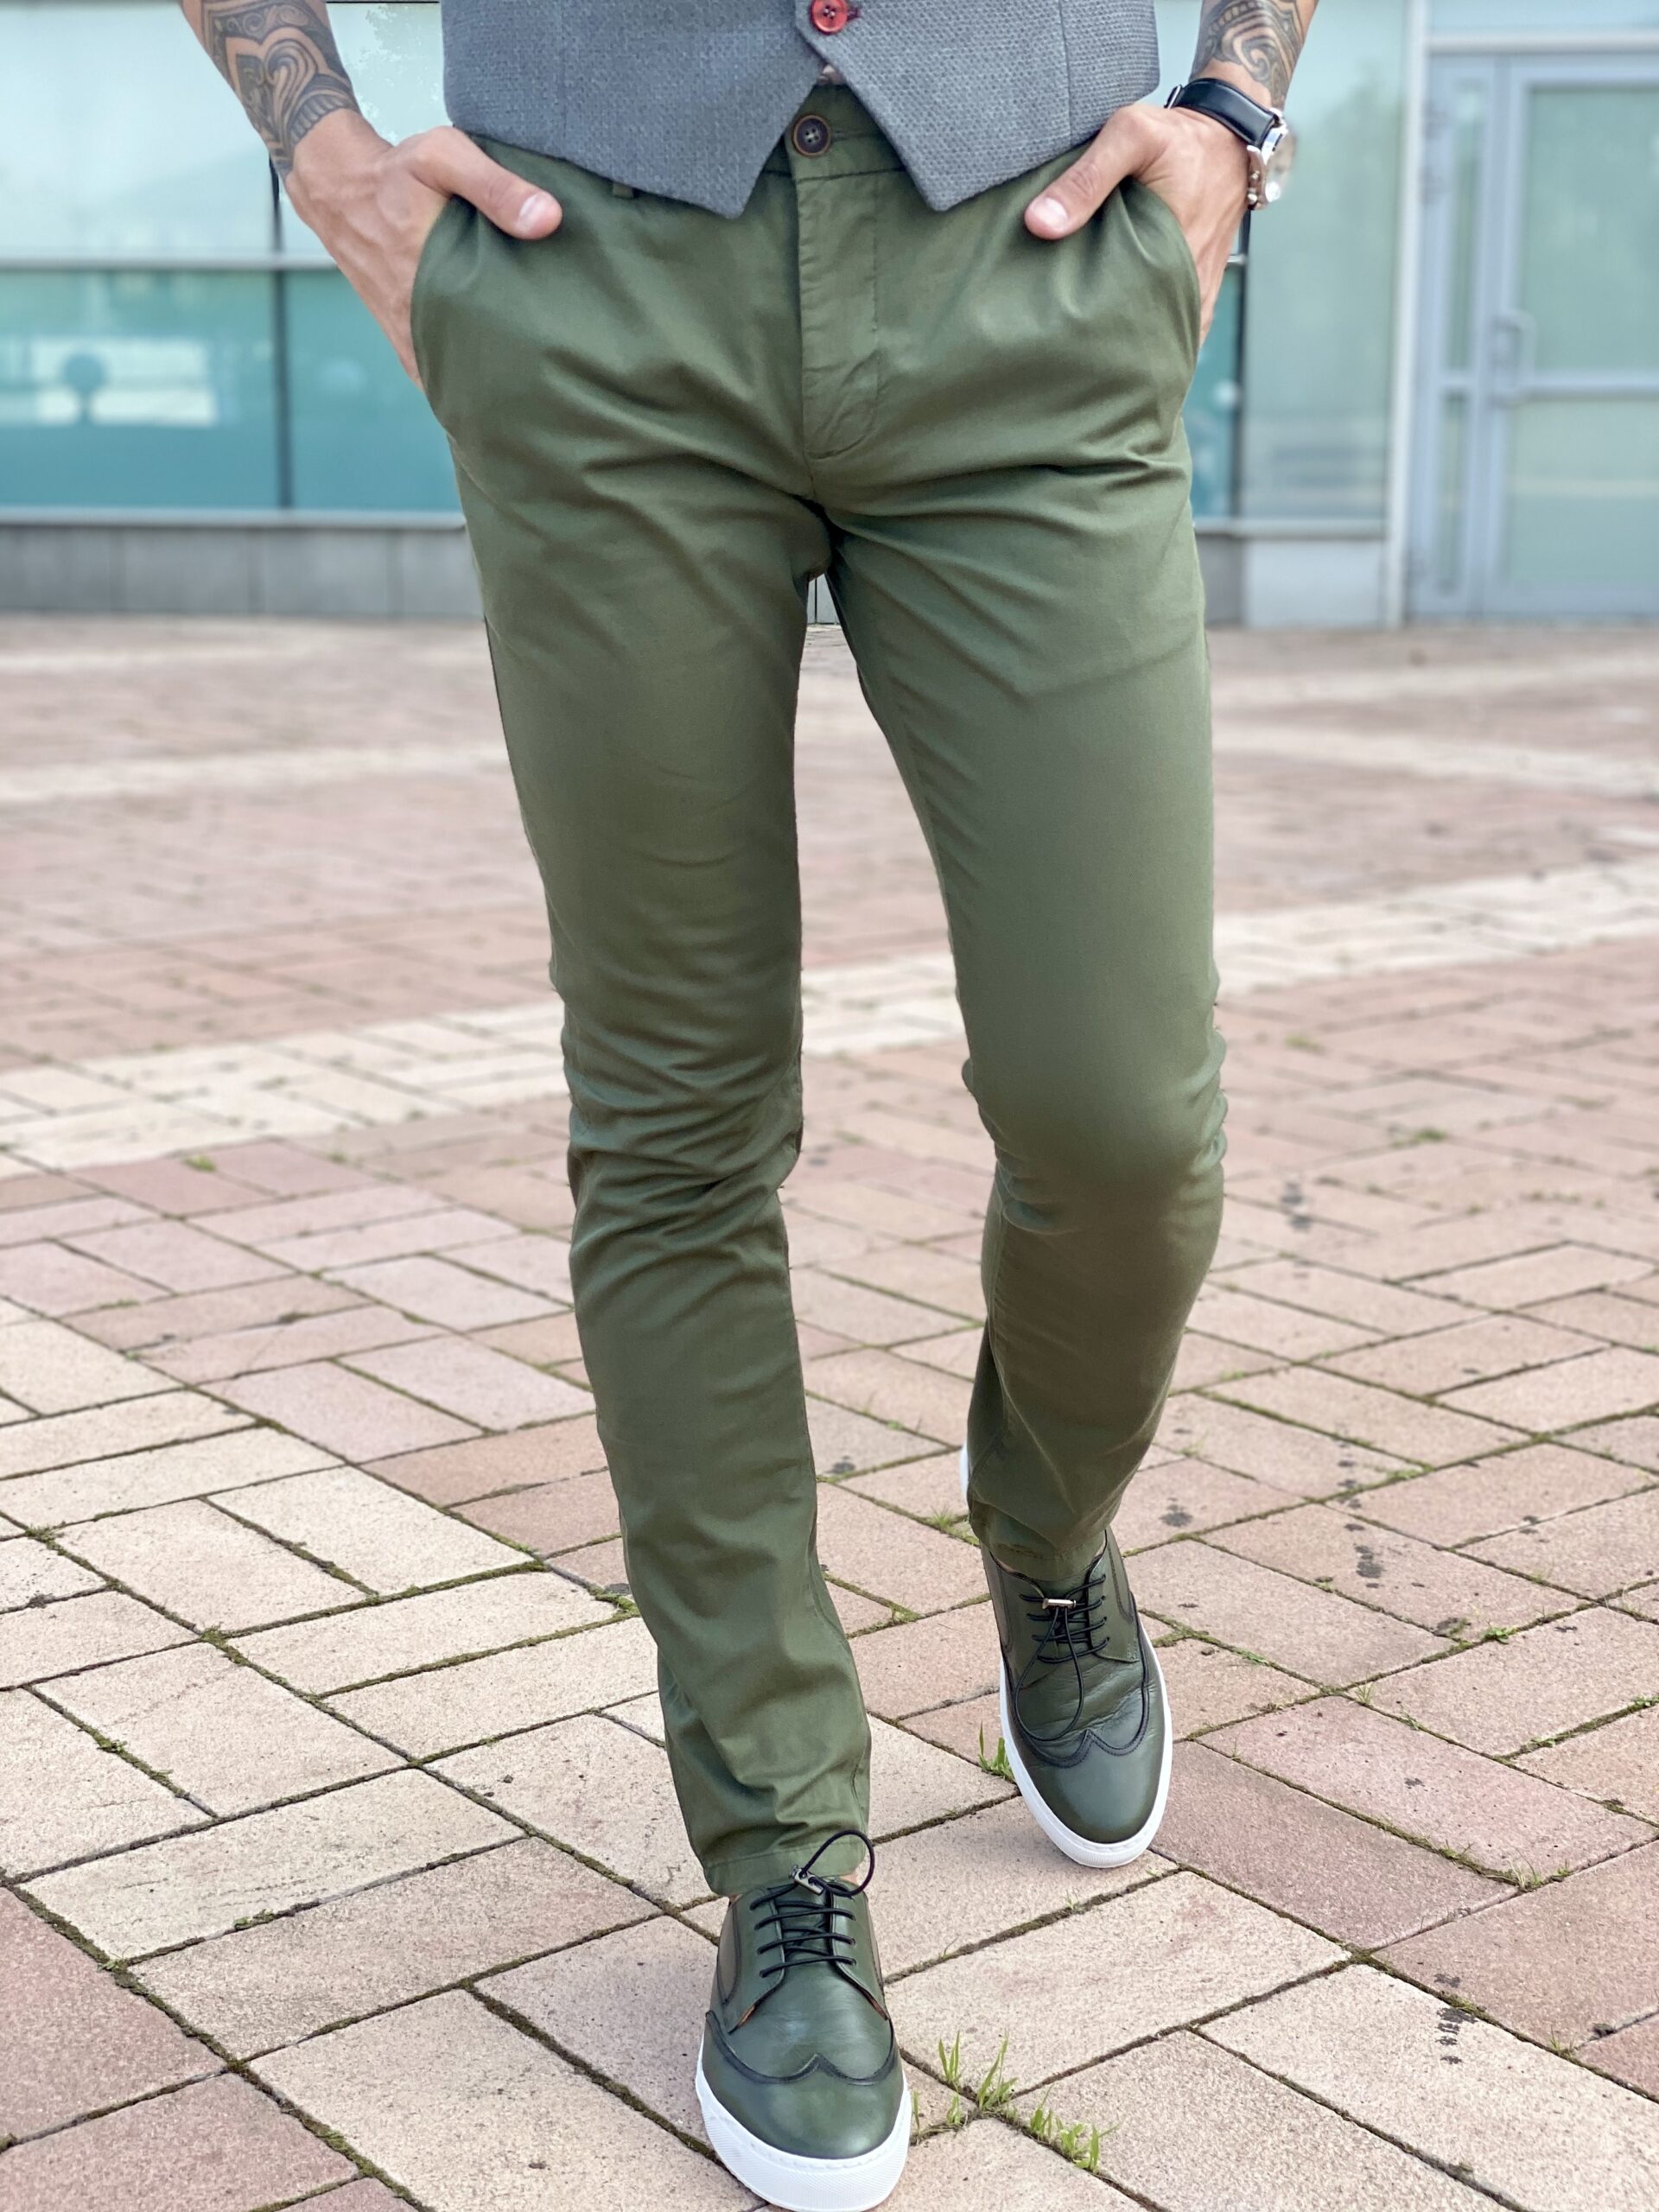 Мужские casual брюки зеленого цвета. Арт.: 2468 – купить в магазине мужскойодежды Smartcasuals